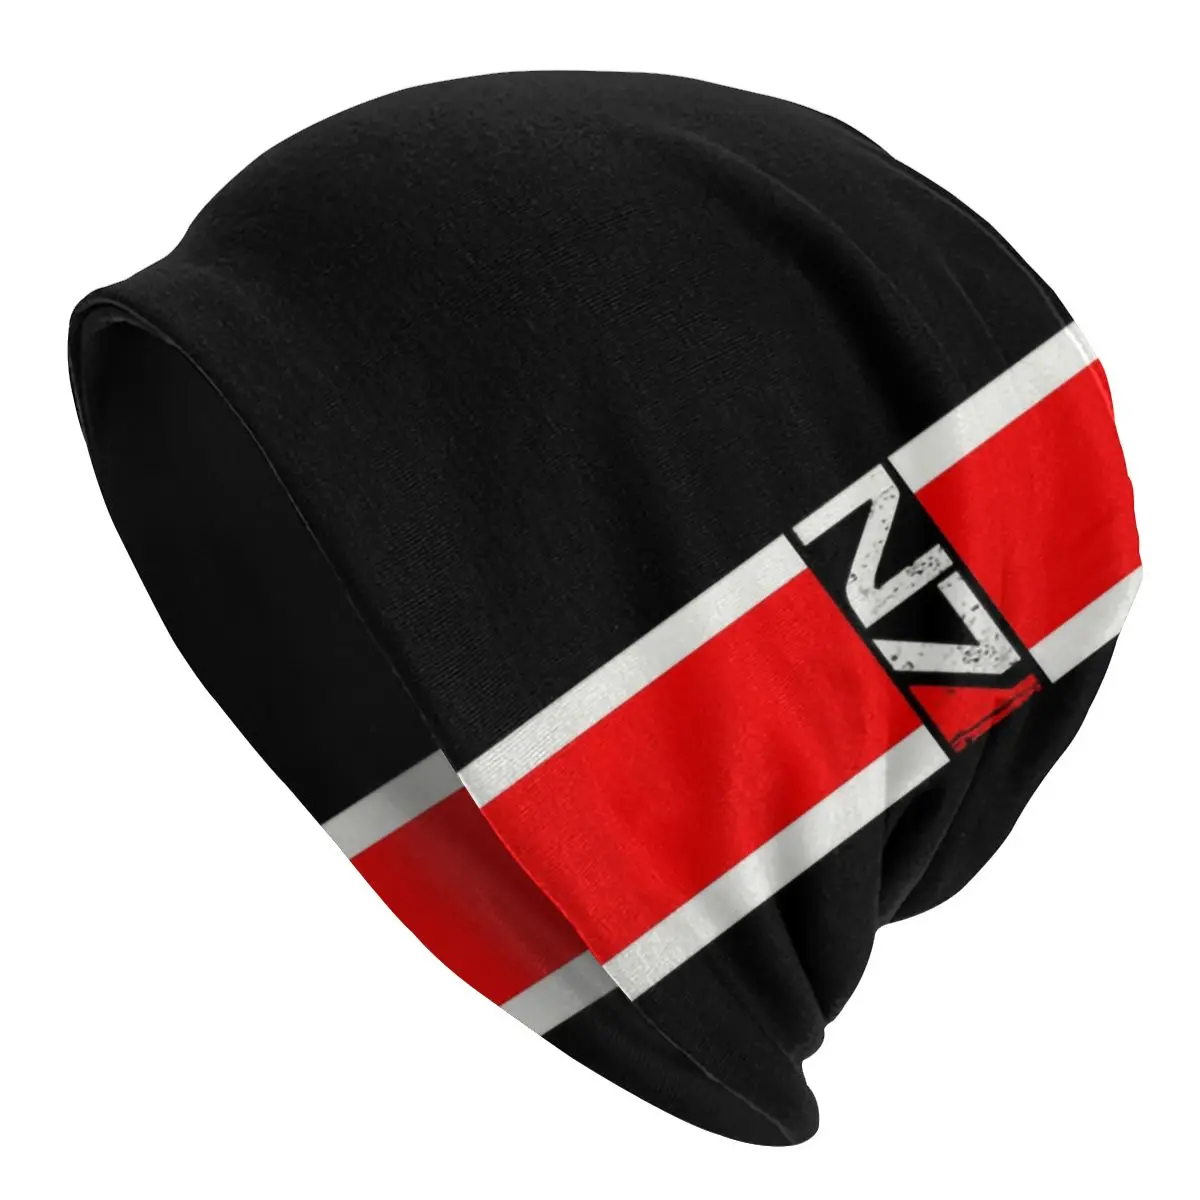 

Mass Effect N7 Emblem Bonnet Beanie Knitted Hat Men Women Hip Hop Alliance Military Video Game Warm Winter Skullies Beanies Caps